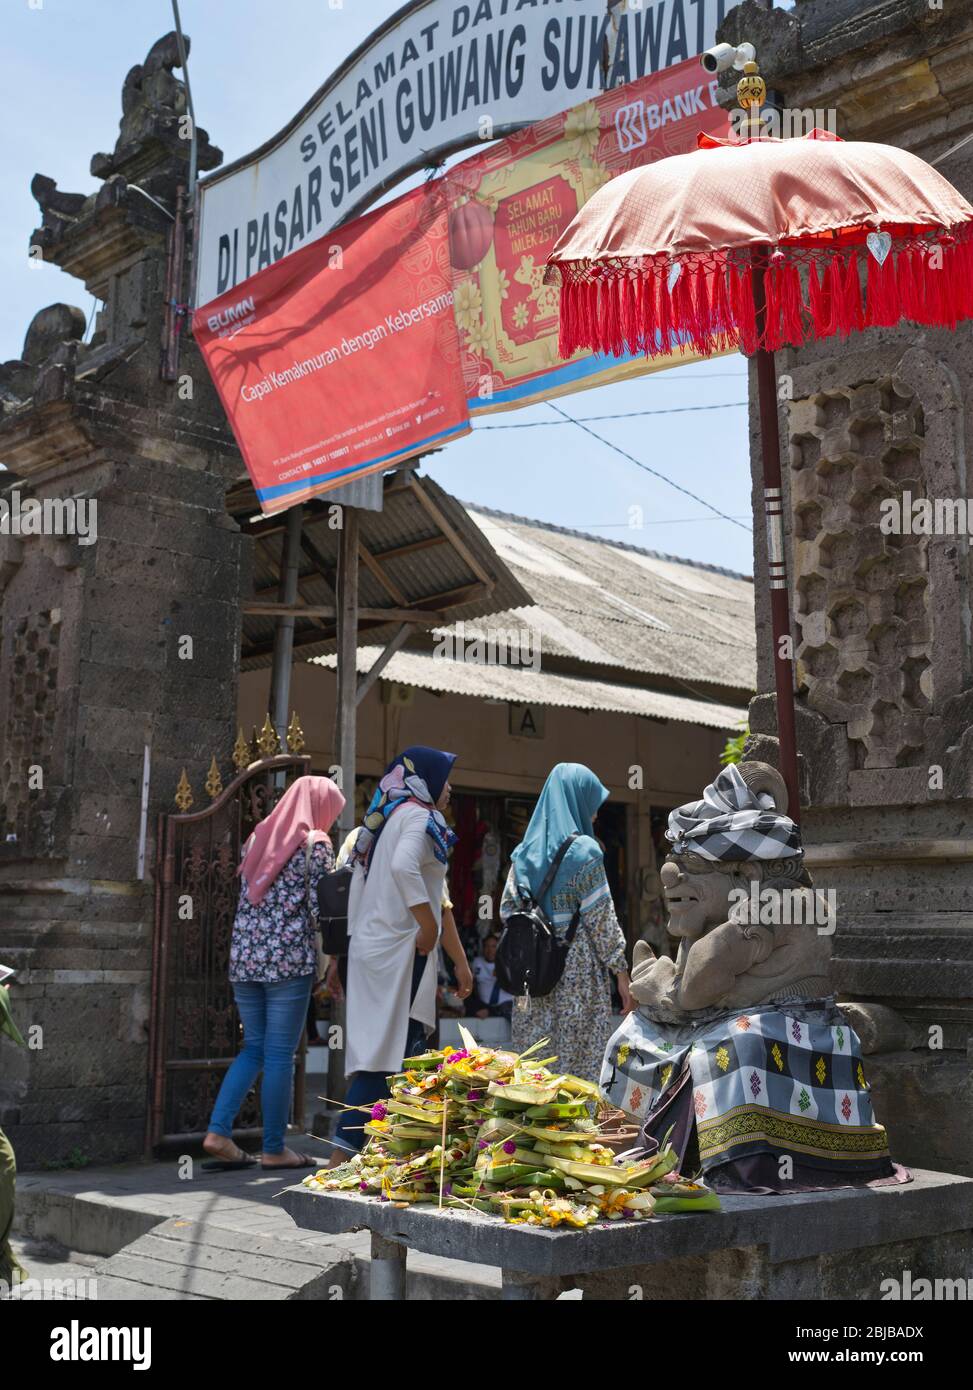 dh Pasar Seni Guwang Sukawati BALI INDONESIEN Eintritt in Kunstfertigkeit Markt muslimische Frauen Touristen balinesische Hüterangebote islamische asien Gruppe Stockfoto